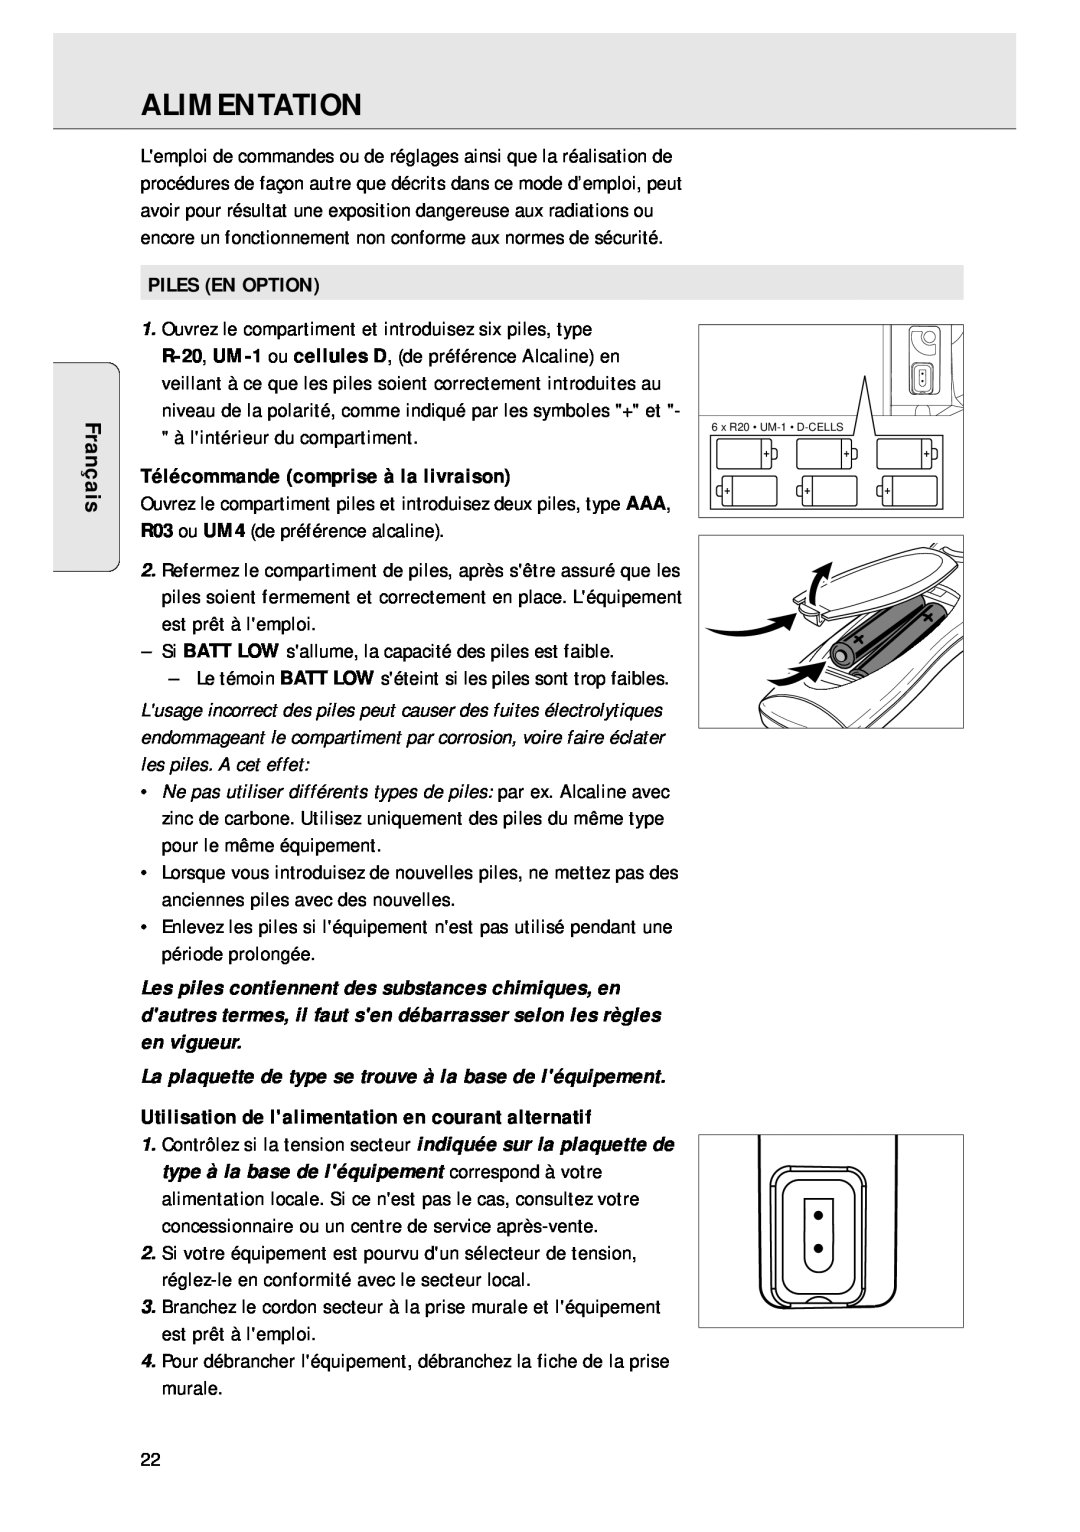 Magnavox AZ 1045 manual Alimentation, Français, Piles En Option, Télécommande comprise à la livraison 